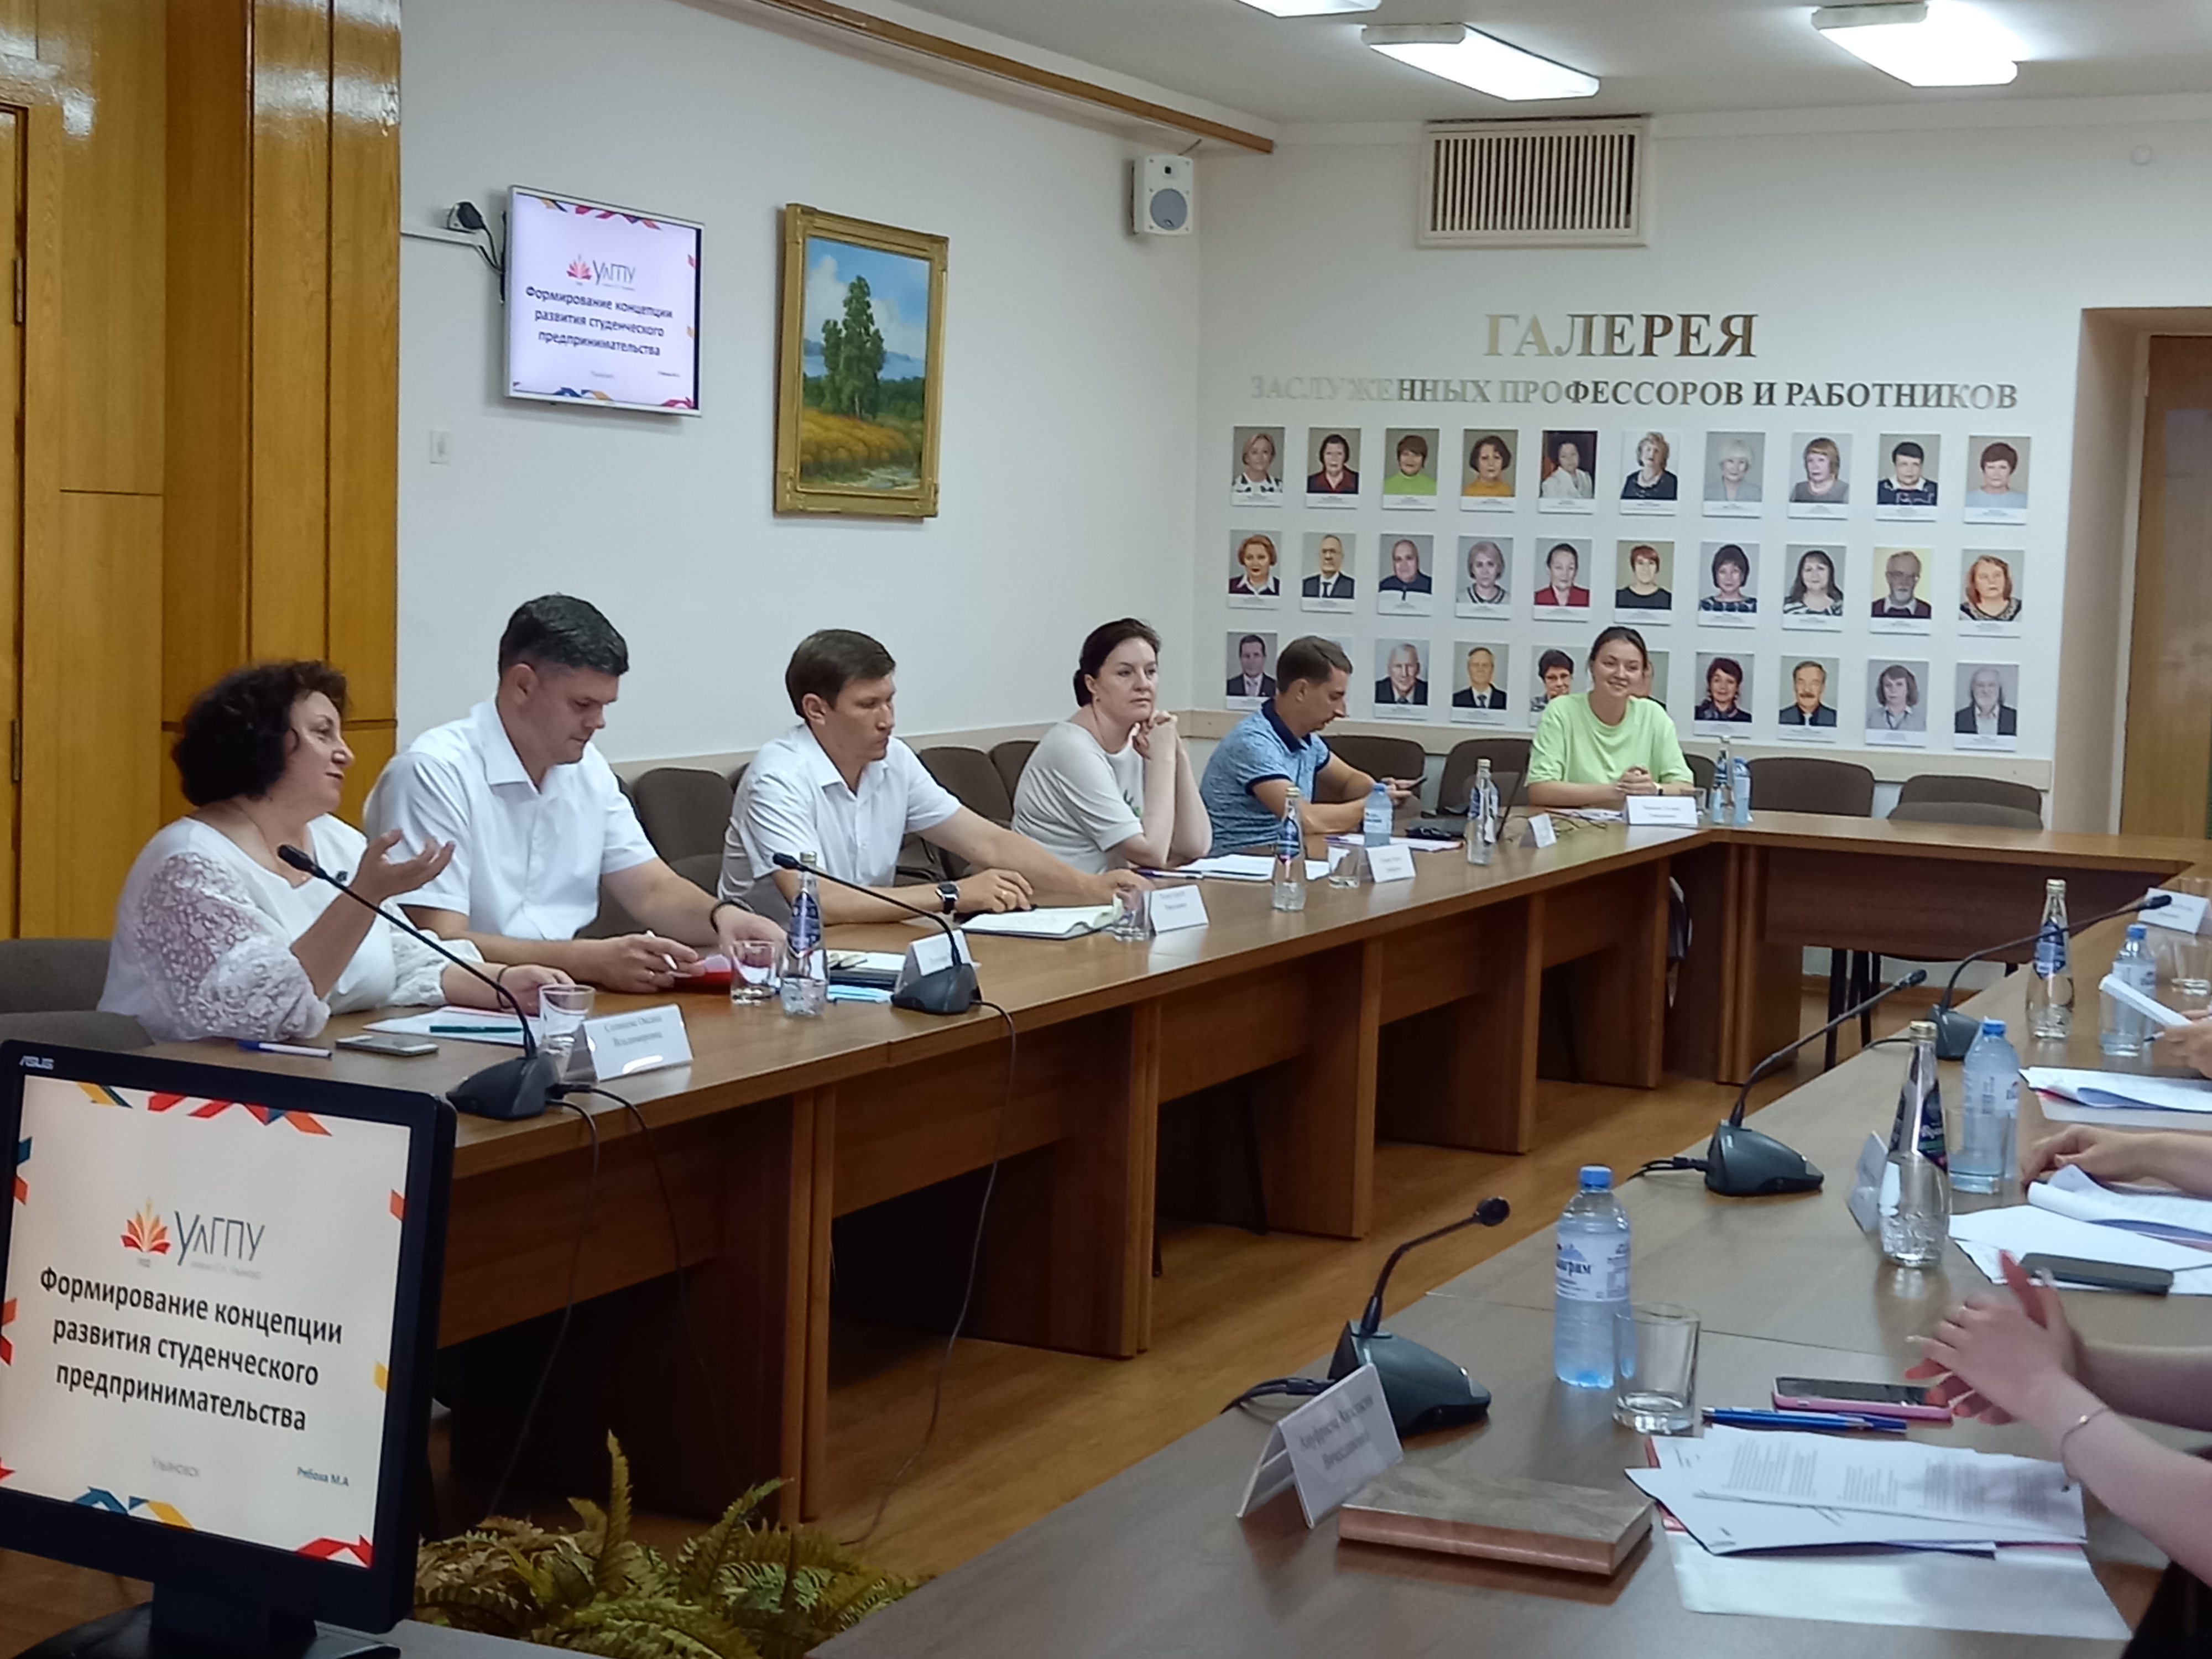 В УлГПУ им. И.Н. Ульянова будет принята концепция развития студенческого предпринимательства